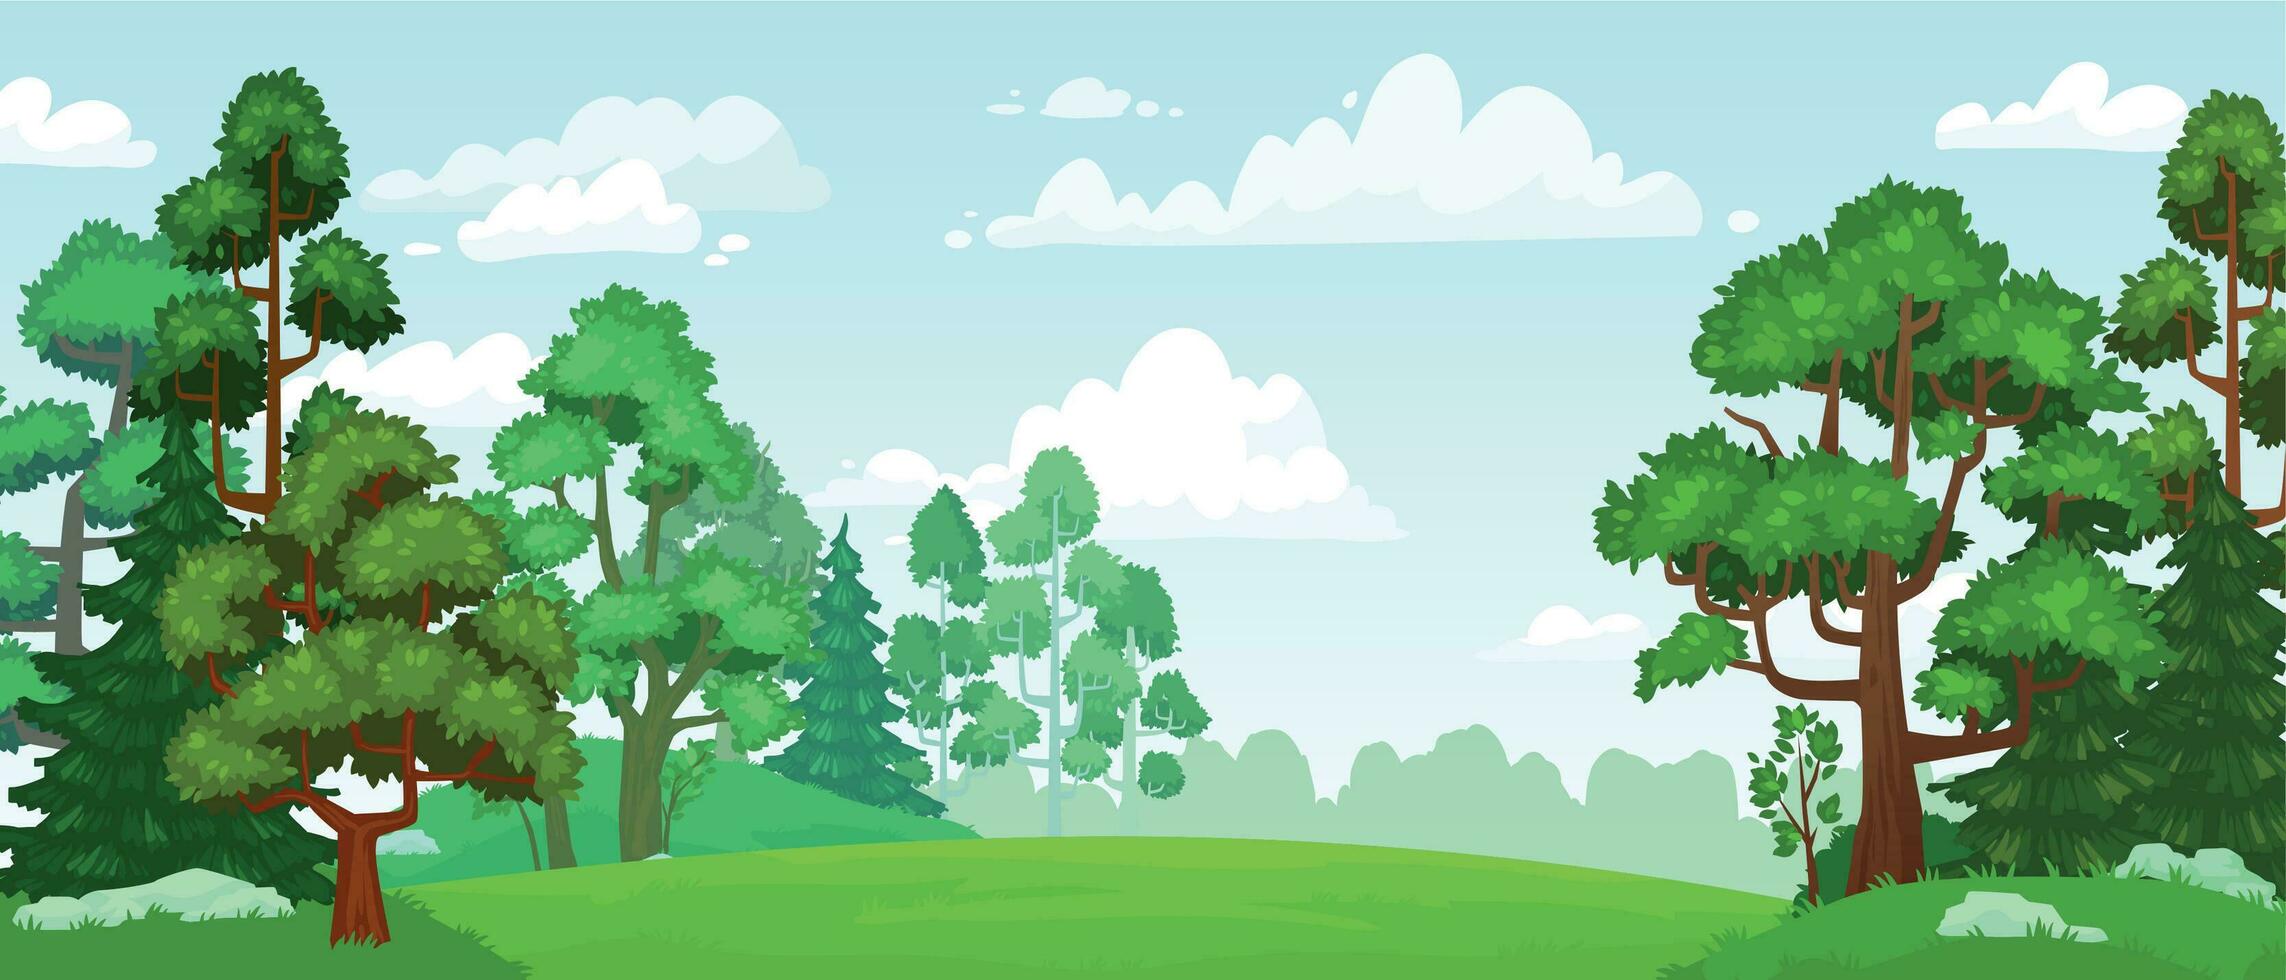 tecknad serie skog glänta. grön gräsmark, naturlig blomstrande skog fält landskap och sommar himmel med moln vektor bakgrund illustration